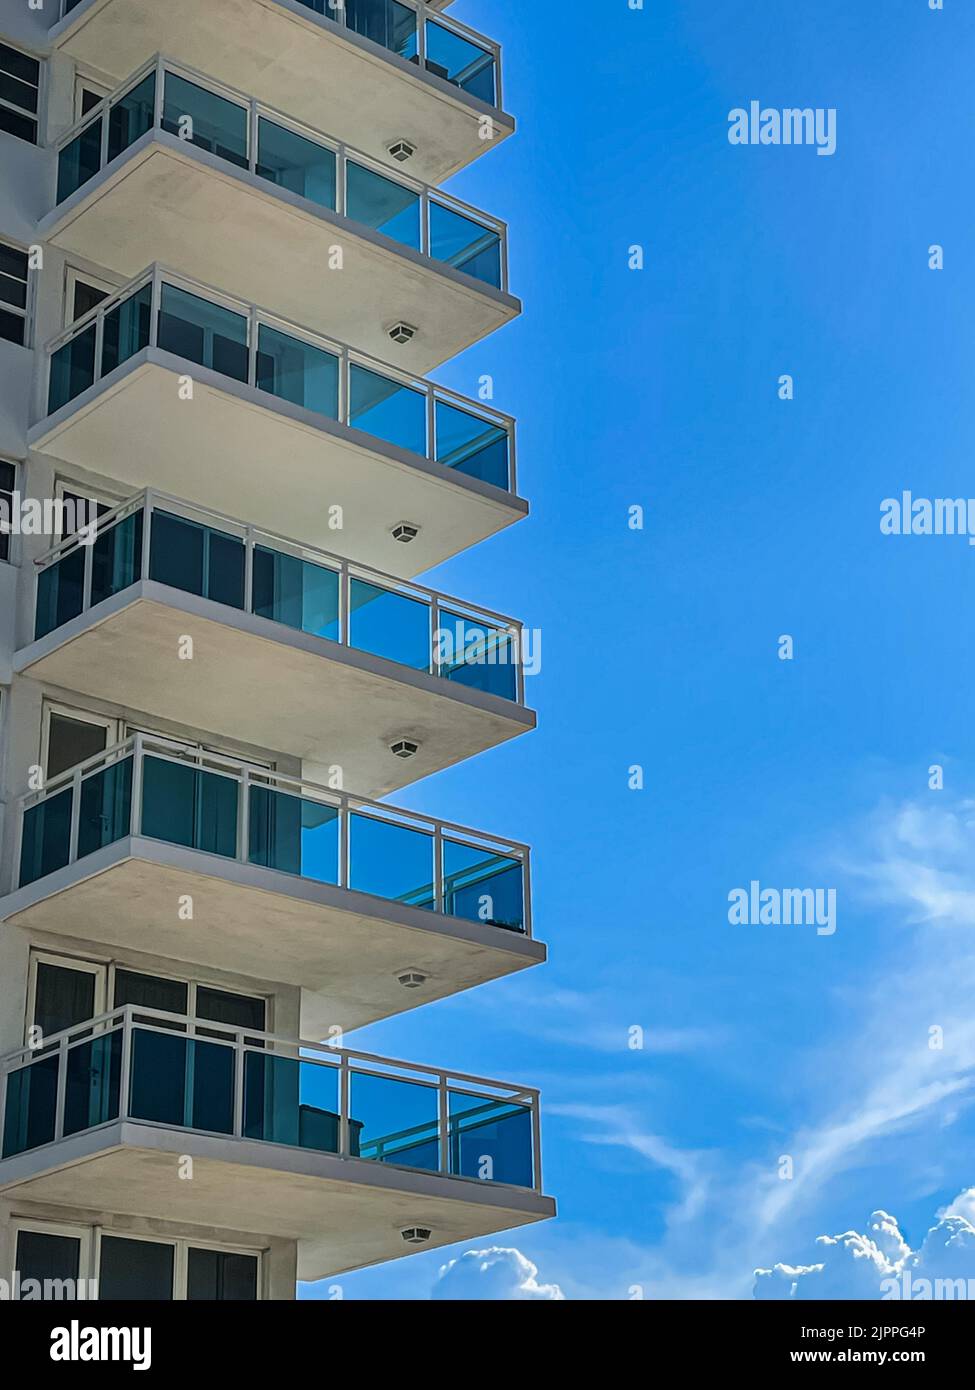 Los altos patios del condominio están apilados uno encima del otro contra un cielo azul cobalto del sur de Florida. Foto de stock